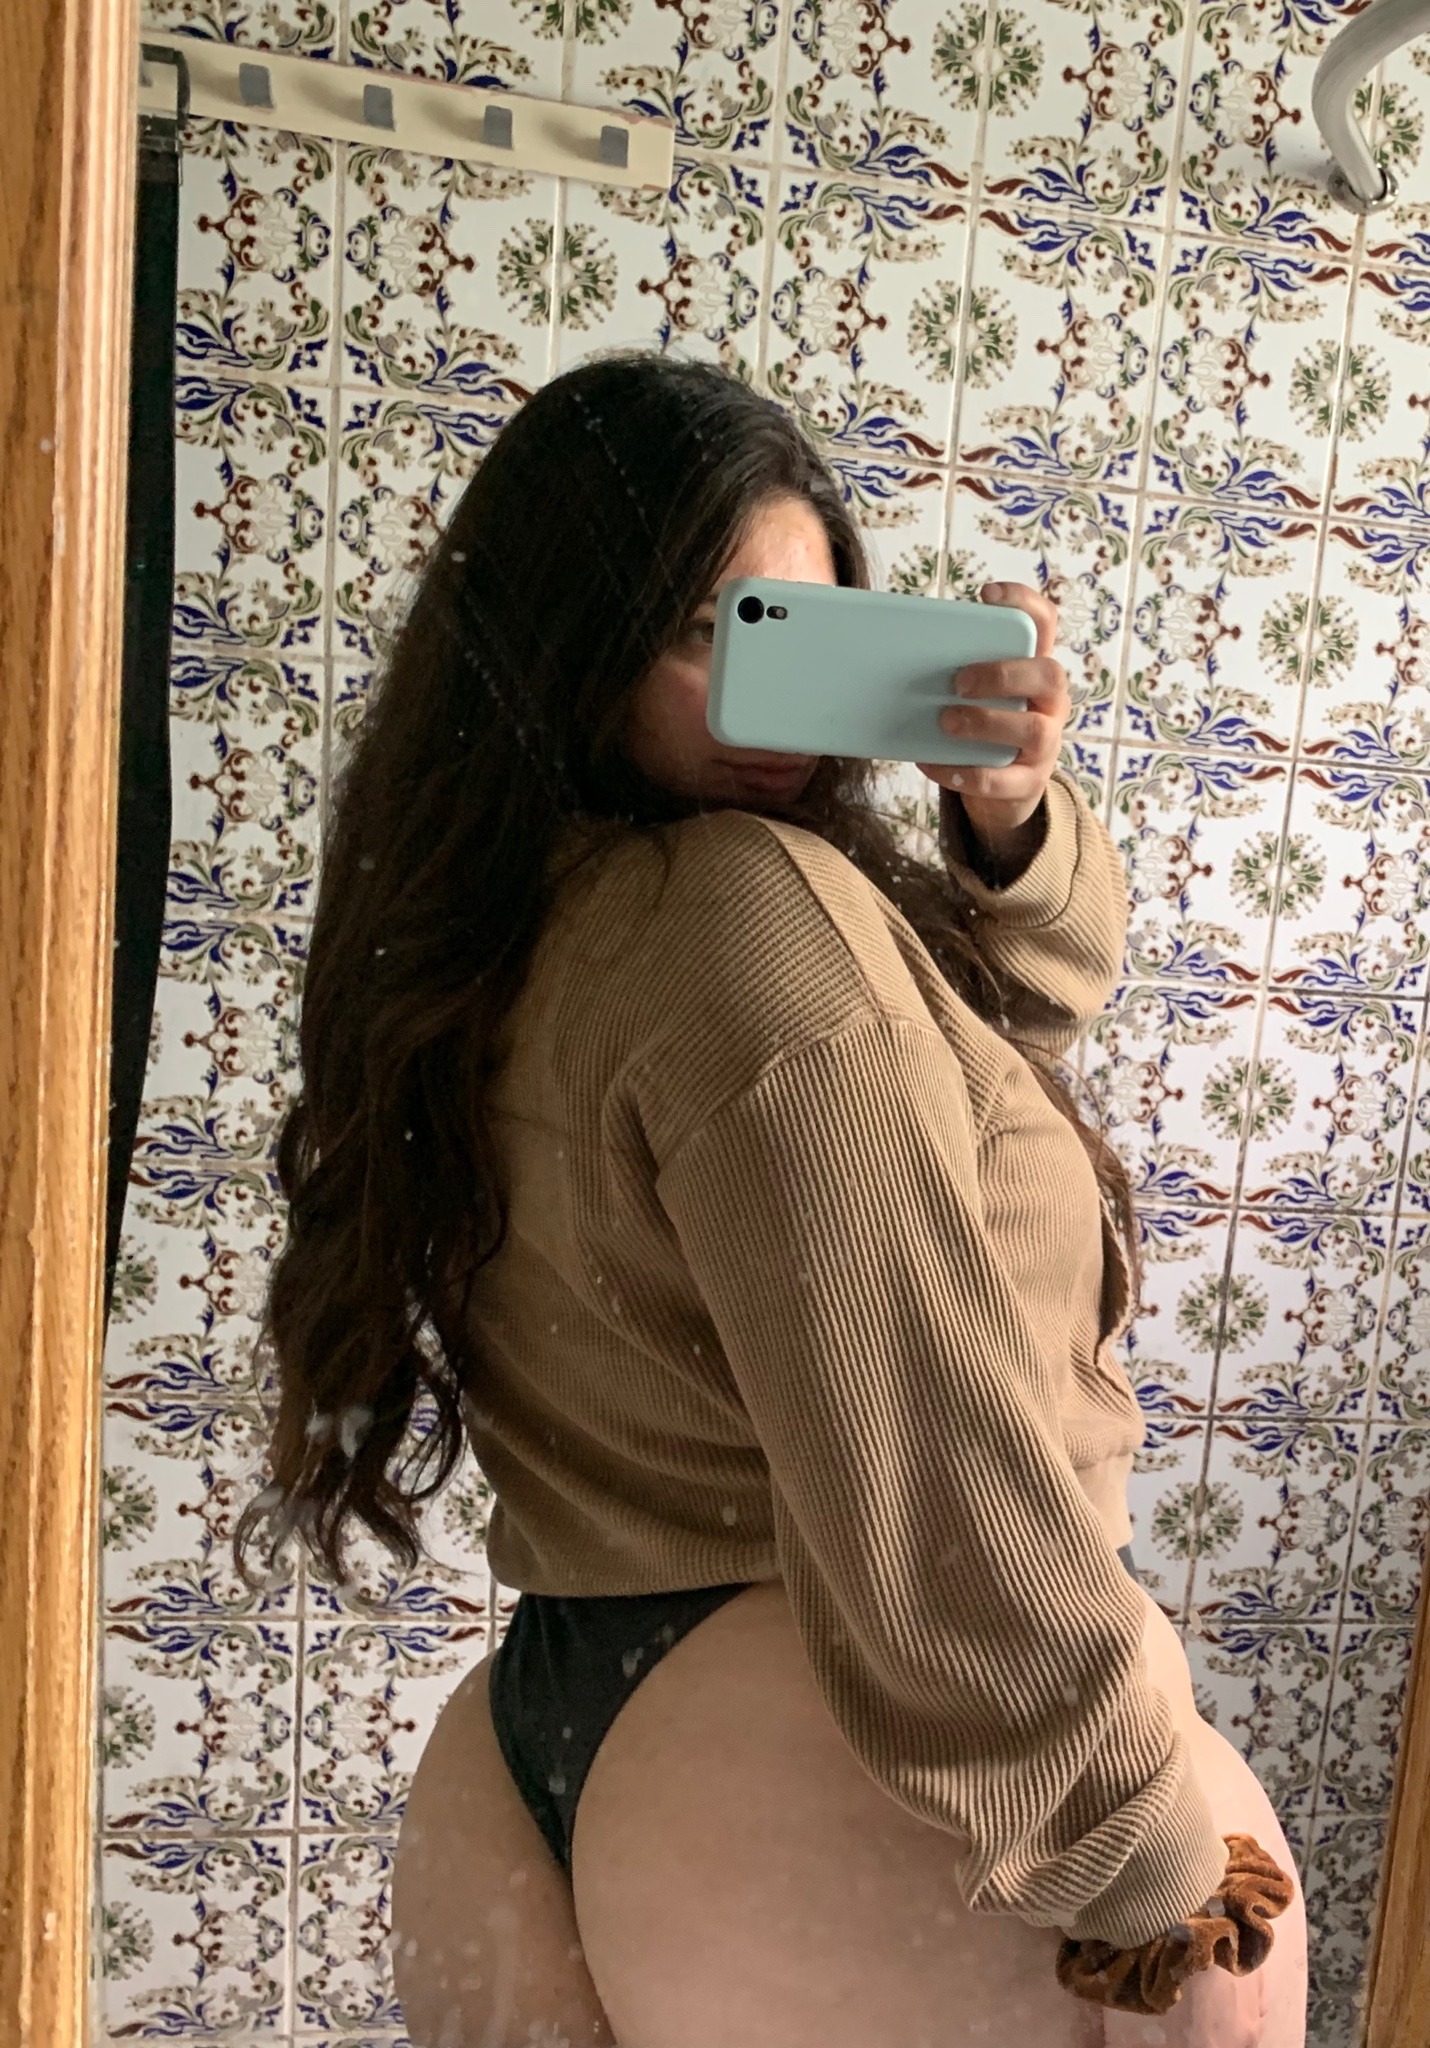 Latina ass nice 17 Hottest